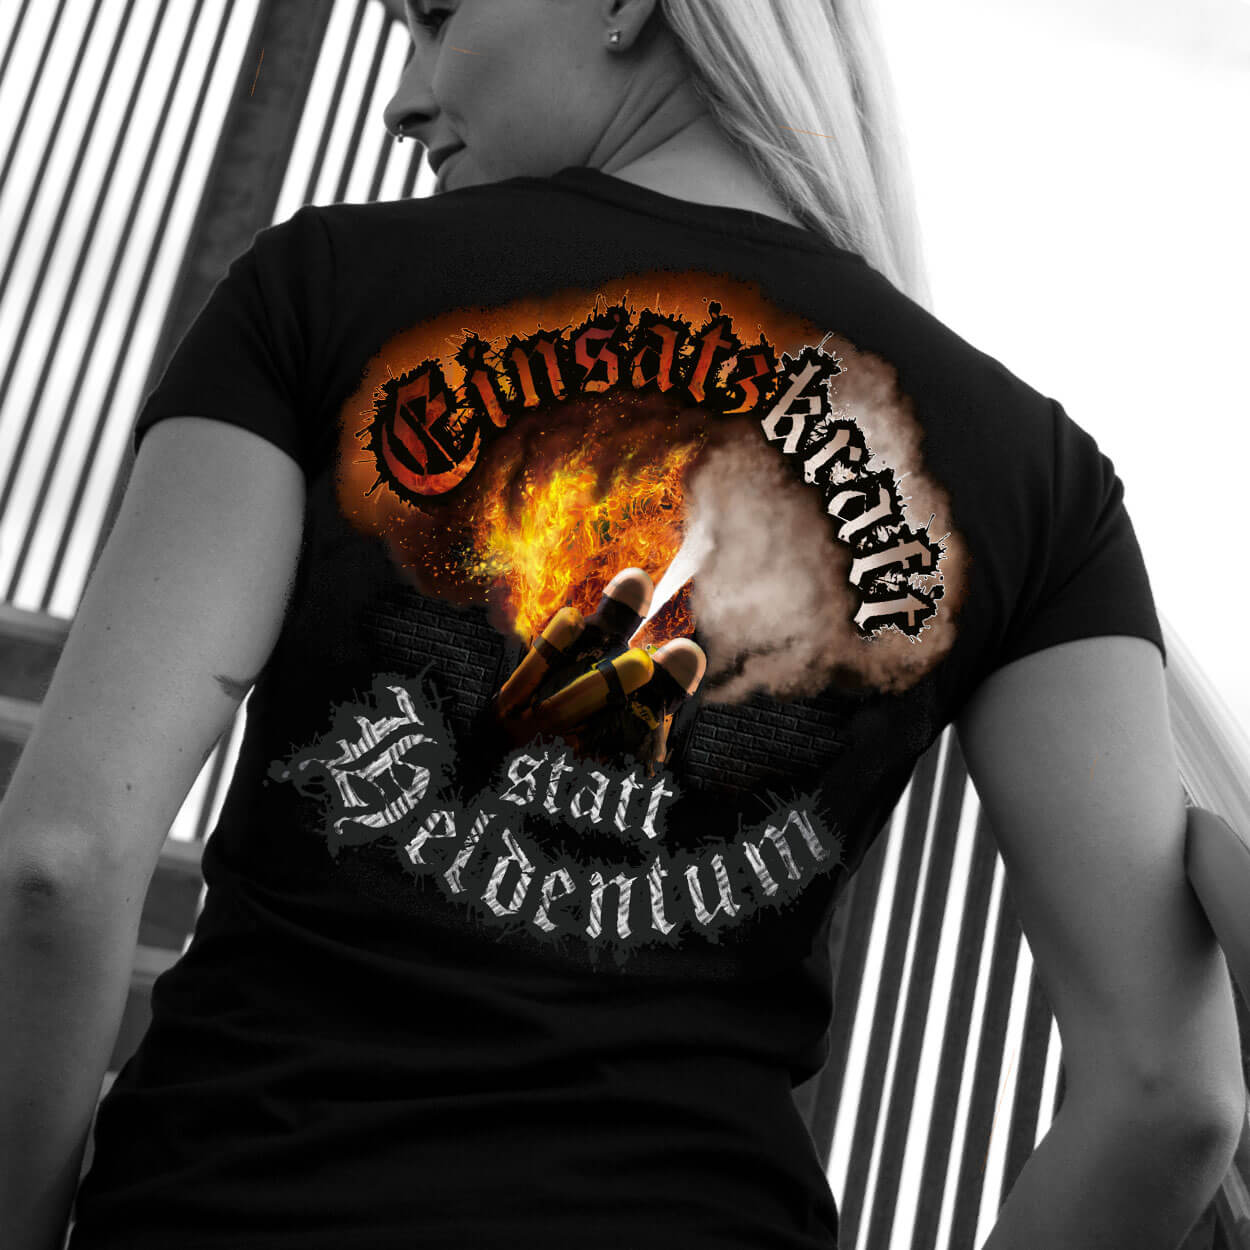 Einsatzkraft® statt Heldentum Design - Feuerwehrfrauen T-Shirt